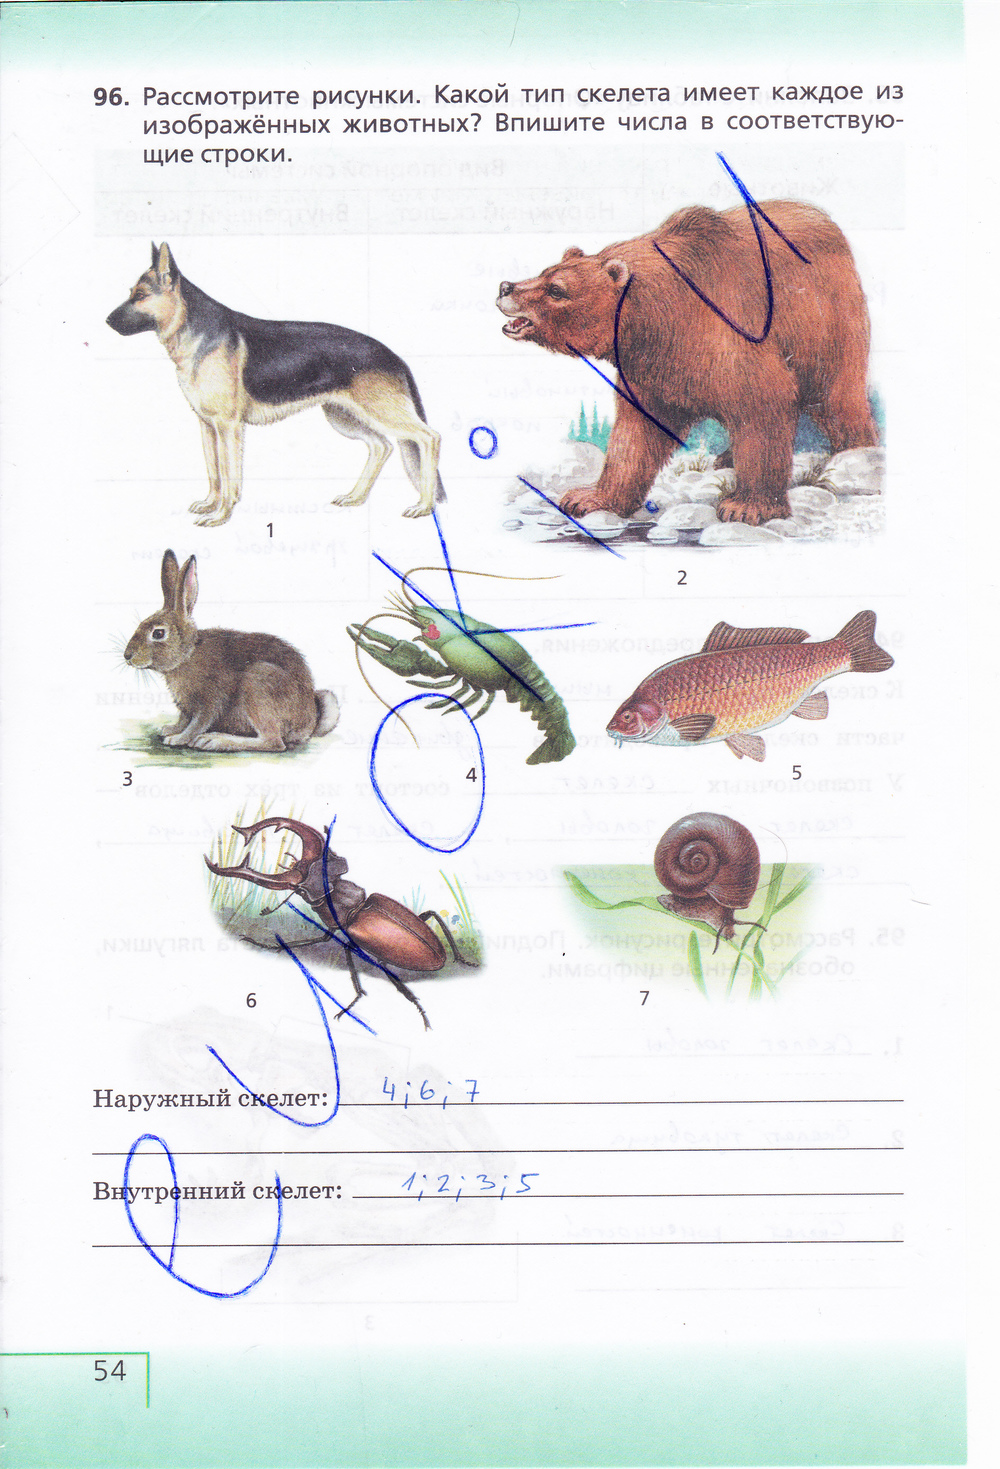 Общими признаками для животных изображенных на рисунке являются двусторонняя симметрия